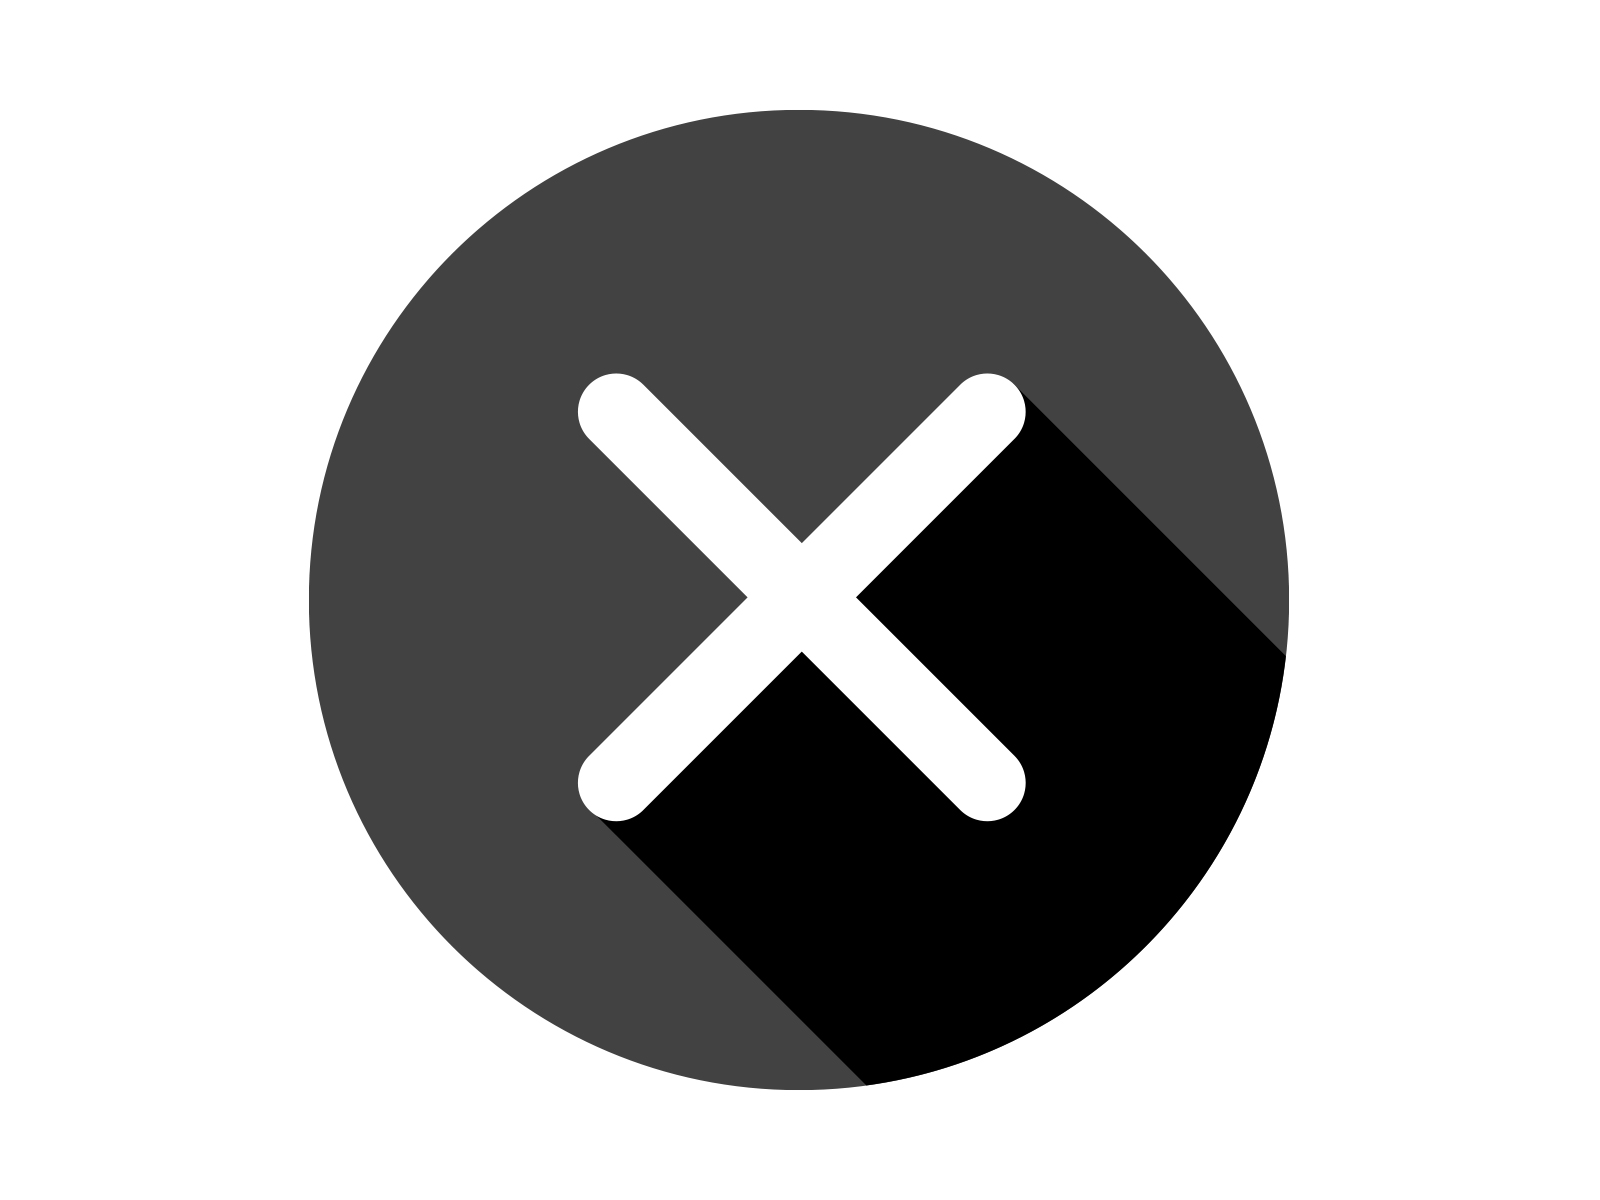 Delete X UI Icon Design Inspiration